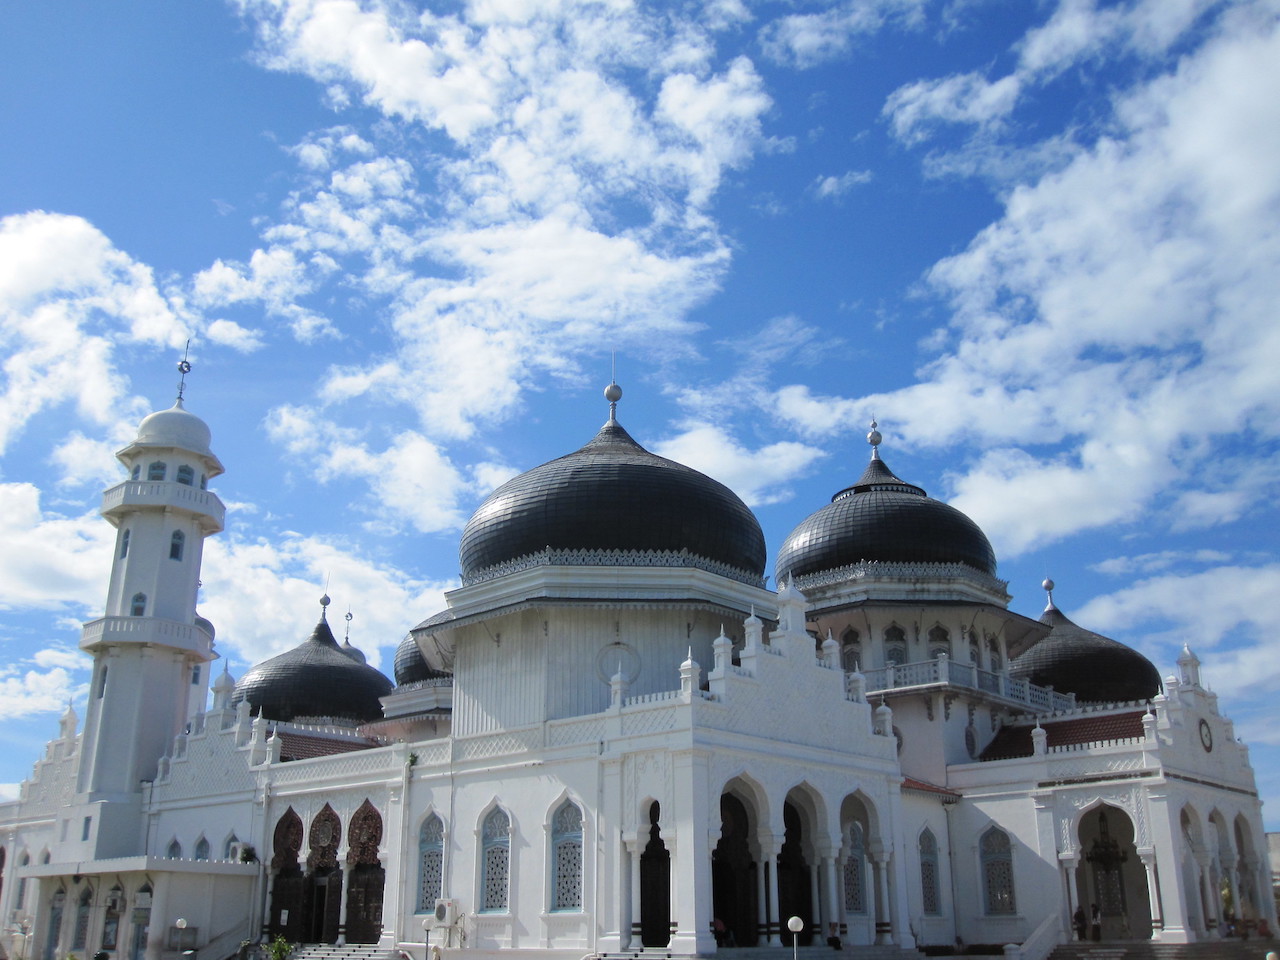 Baiturrahman Grand Mosque (Masjid Raya Baiturrahman) in Banda Aceh, Indonesia